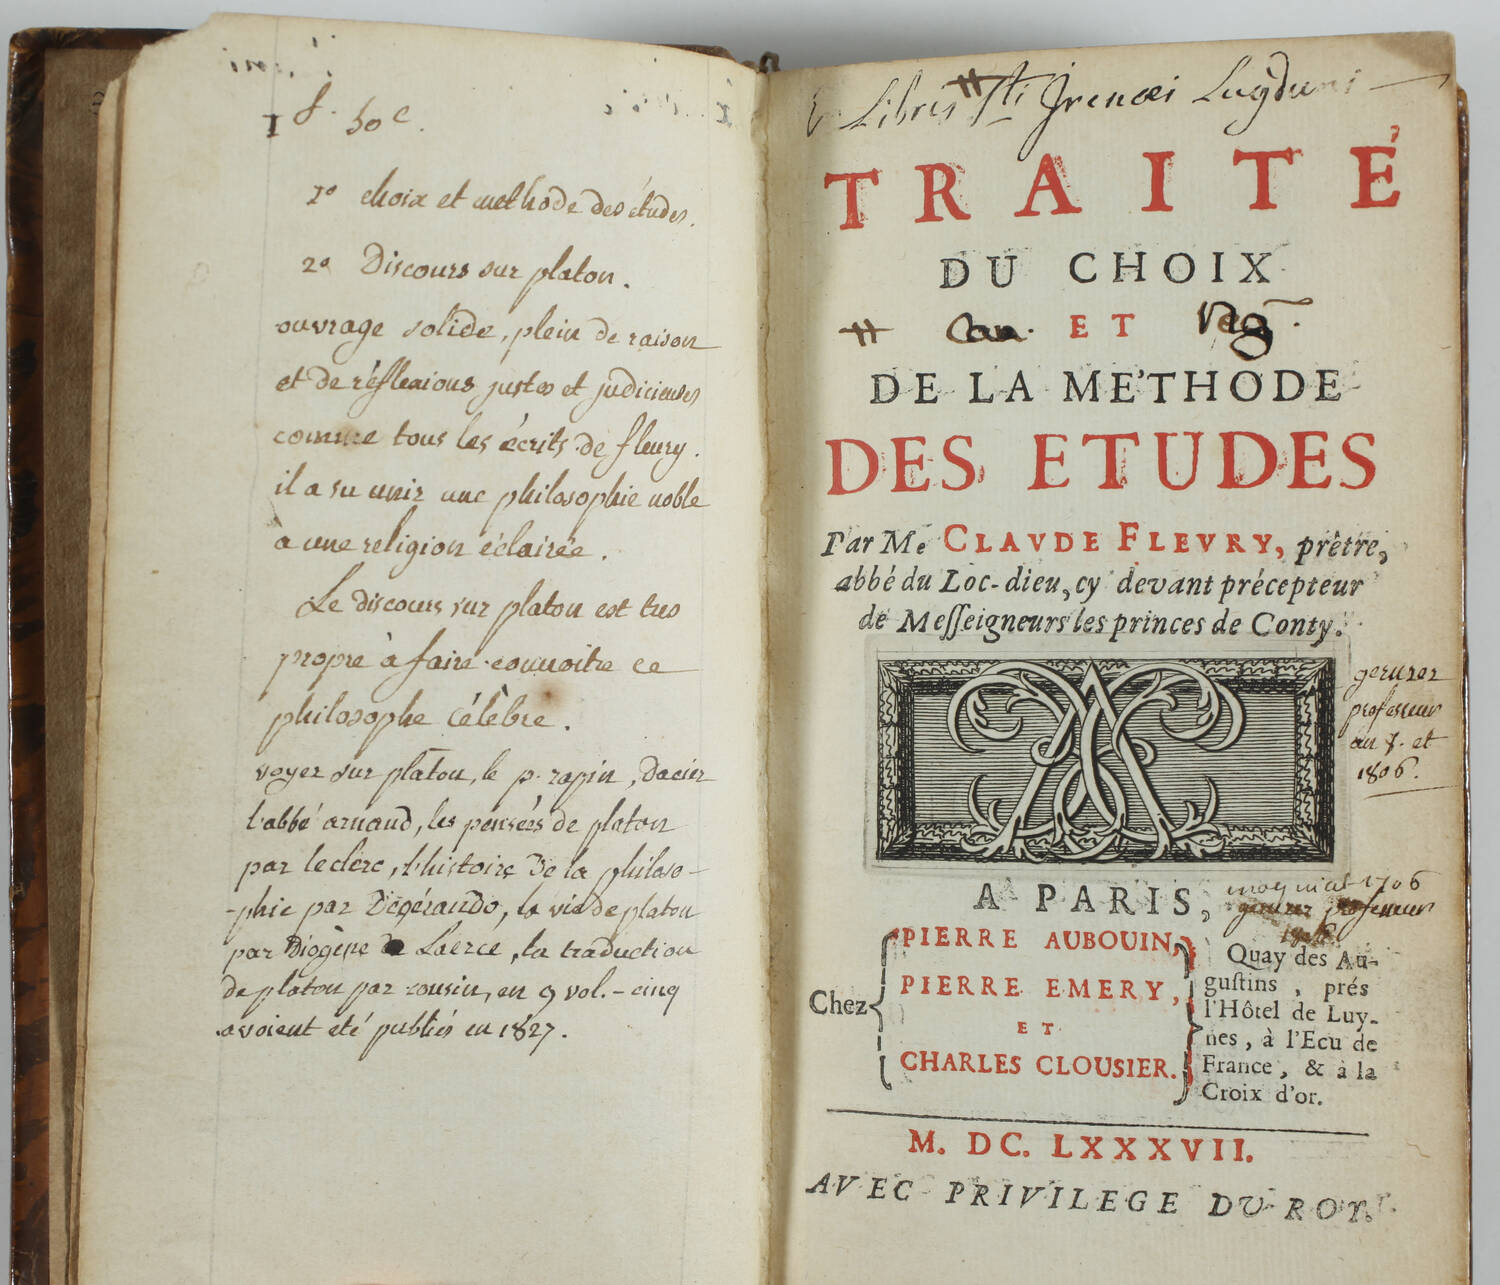 Claude FLEURY - Traité du choix et de la méthode des études - 1687 - Ex-libris - Photo 0, livre ancien du XVIIe siècle